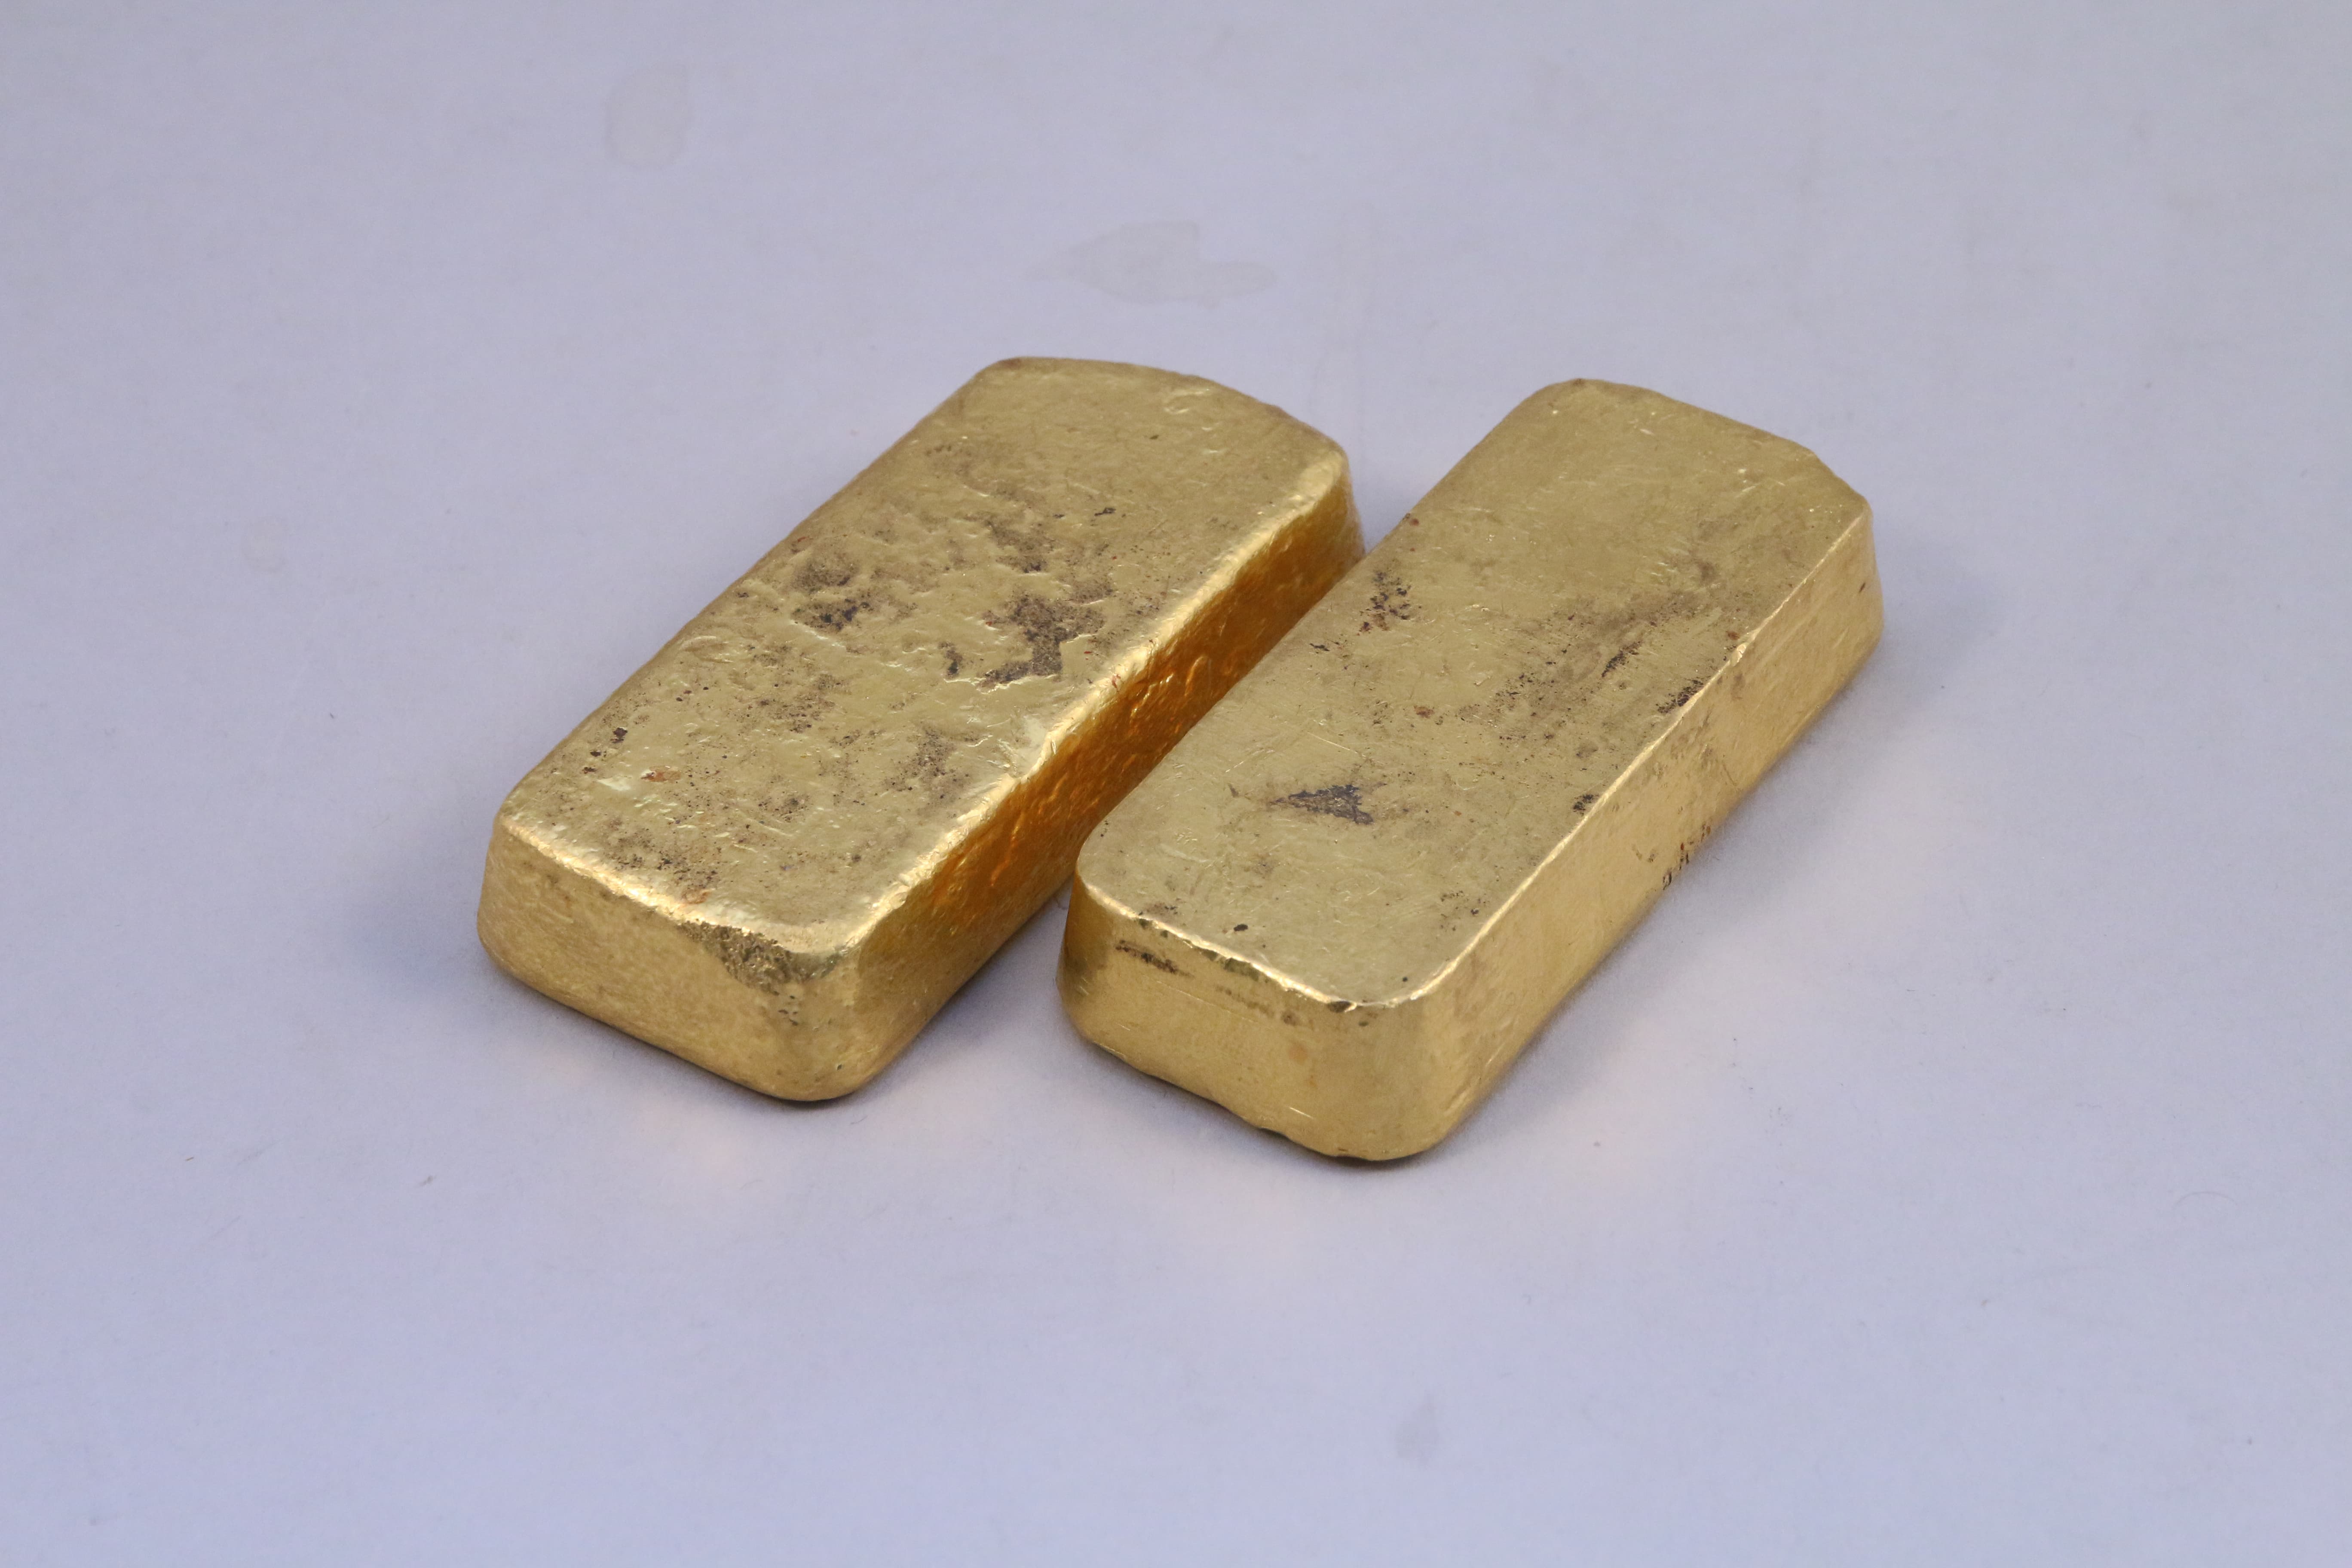 Les deux lingots d'or